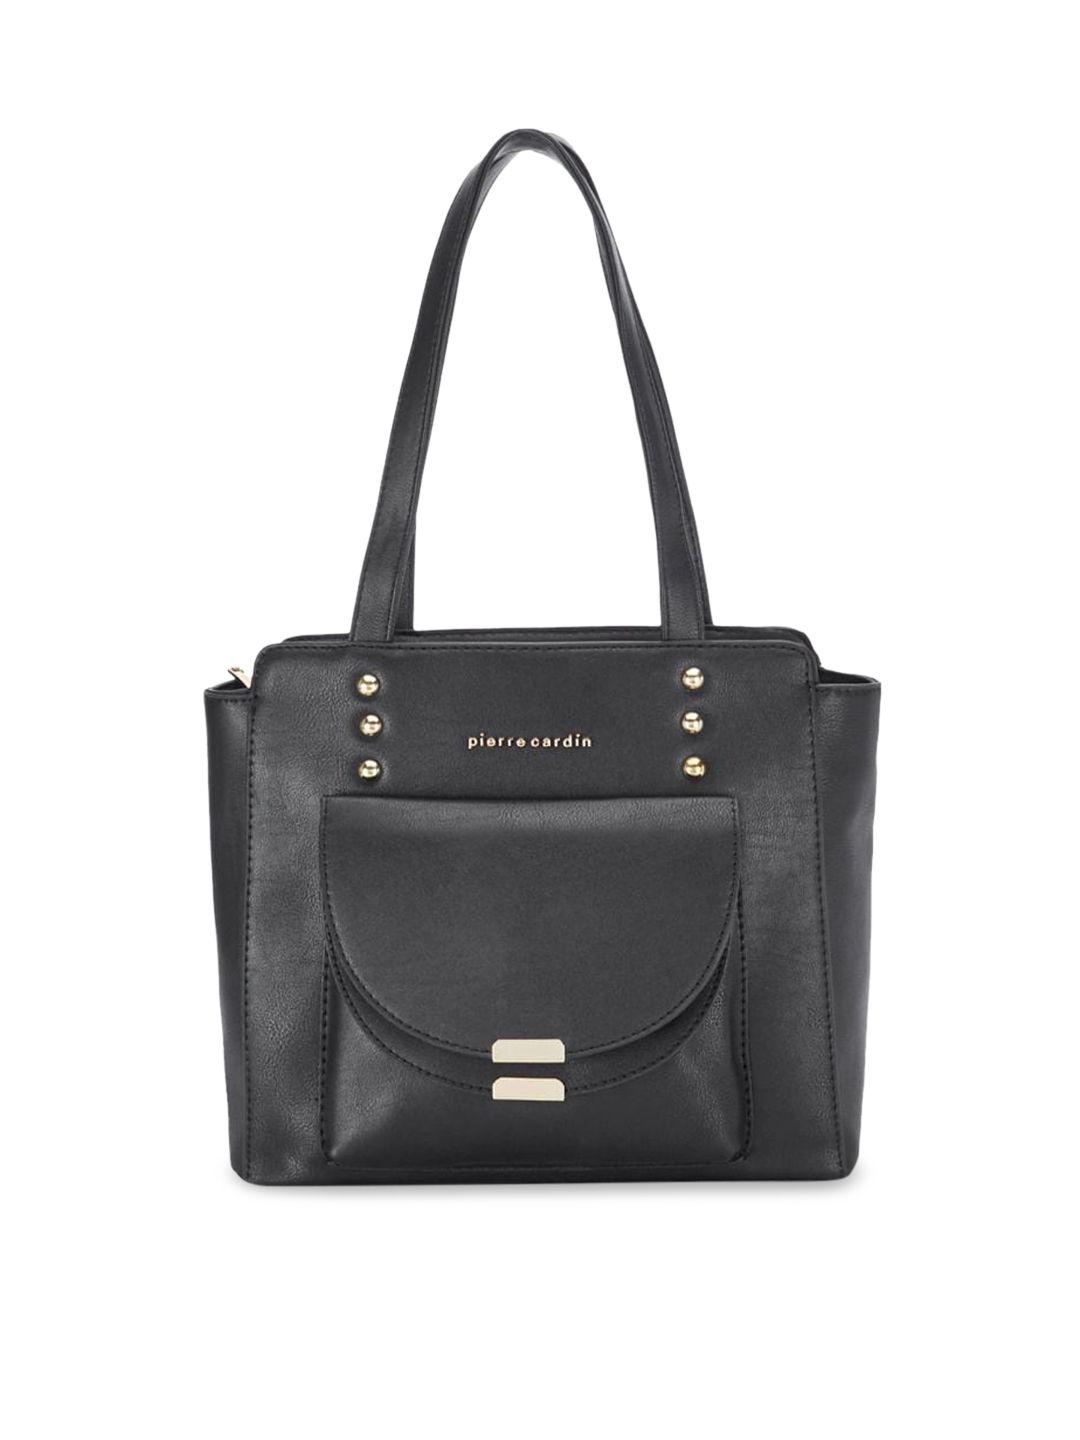 pierre cardin Women Black Solid Tote Handbag